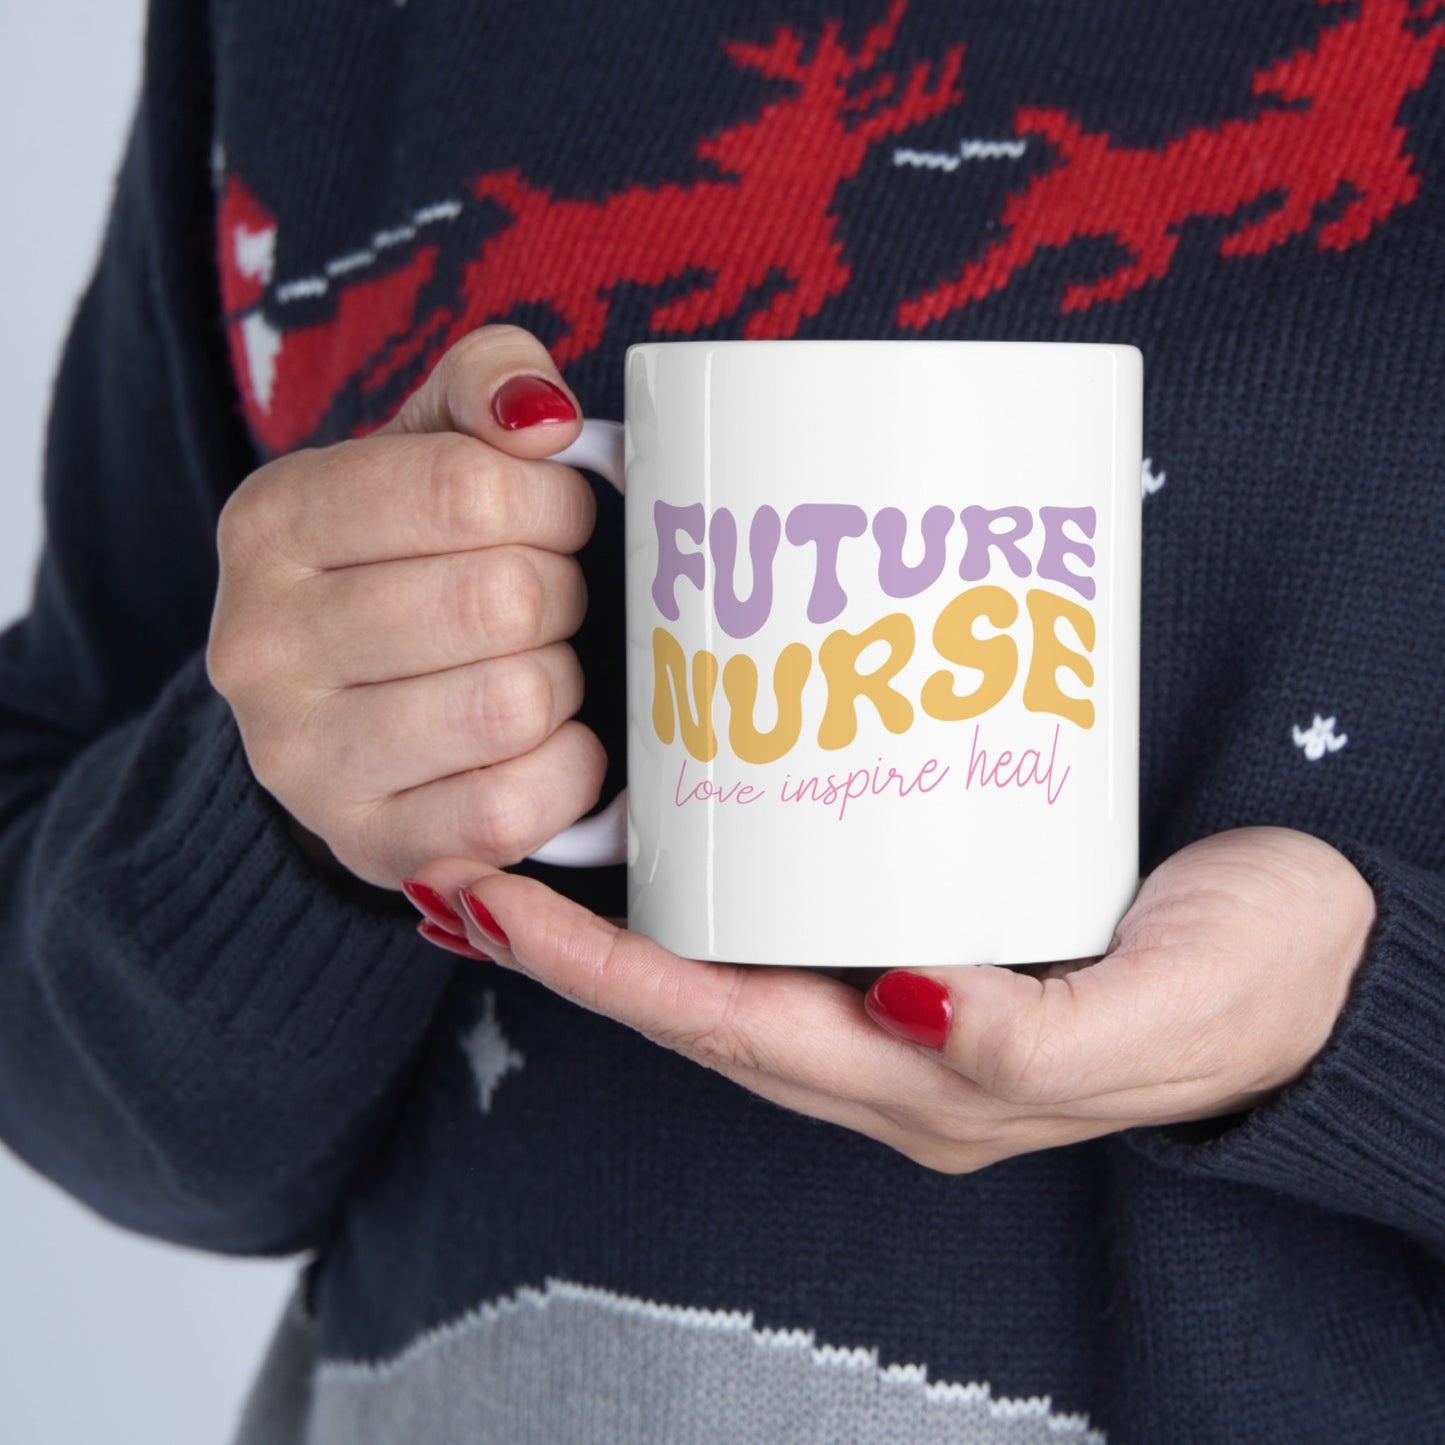 Future Nurse loving Nursing Mug, I love nurses Mug, Awesome gift Mug for nurses, gift Mug for a special nurse, Thank you gift Mug for nurses